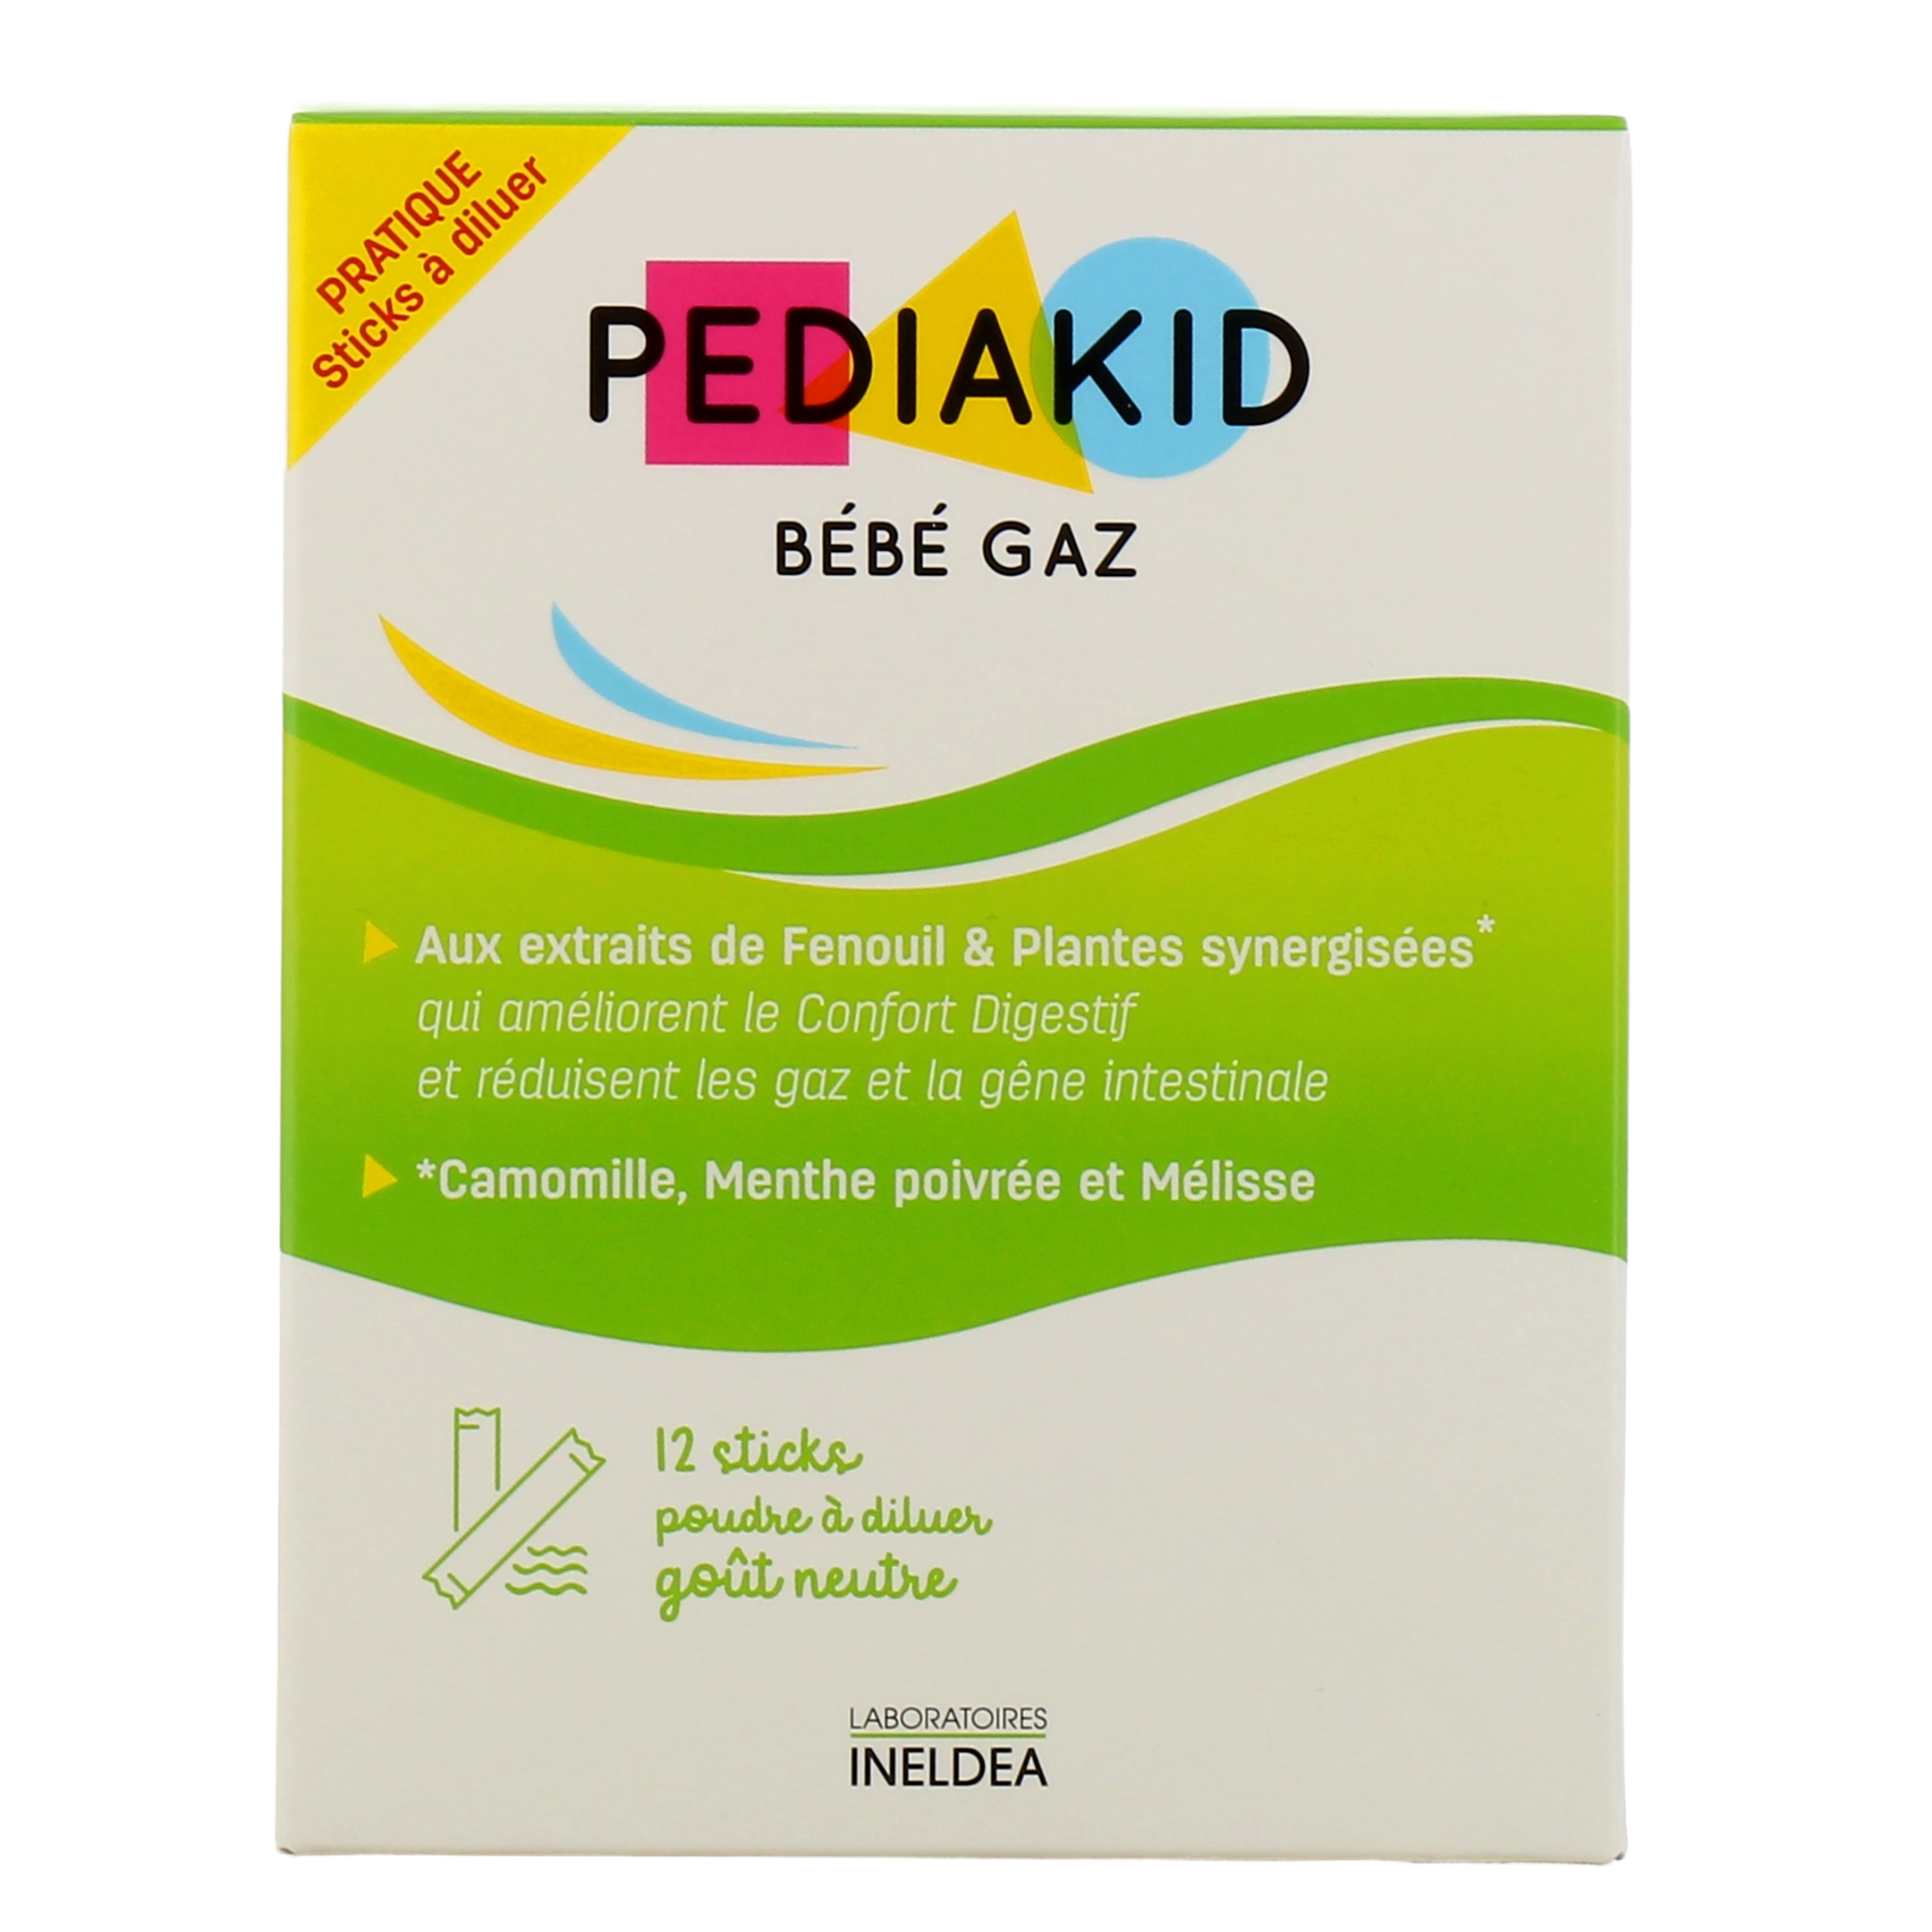 Pediakid Bébé Gaz 12 sticks - Pharmacie Saint Germain Compiègne